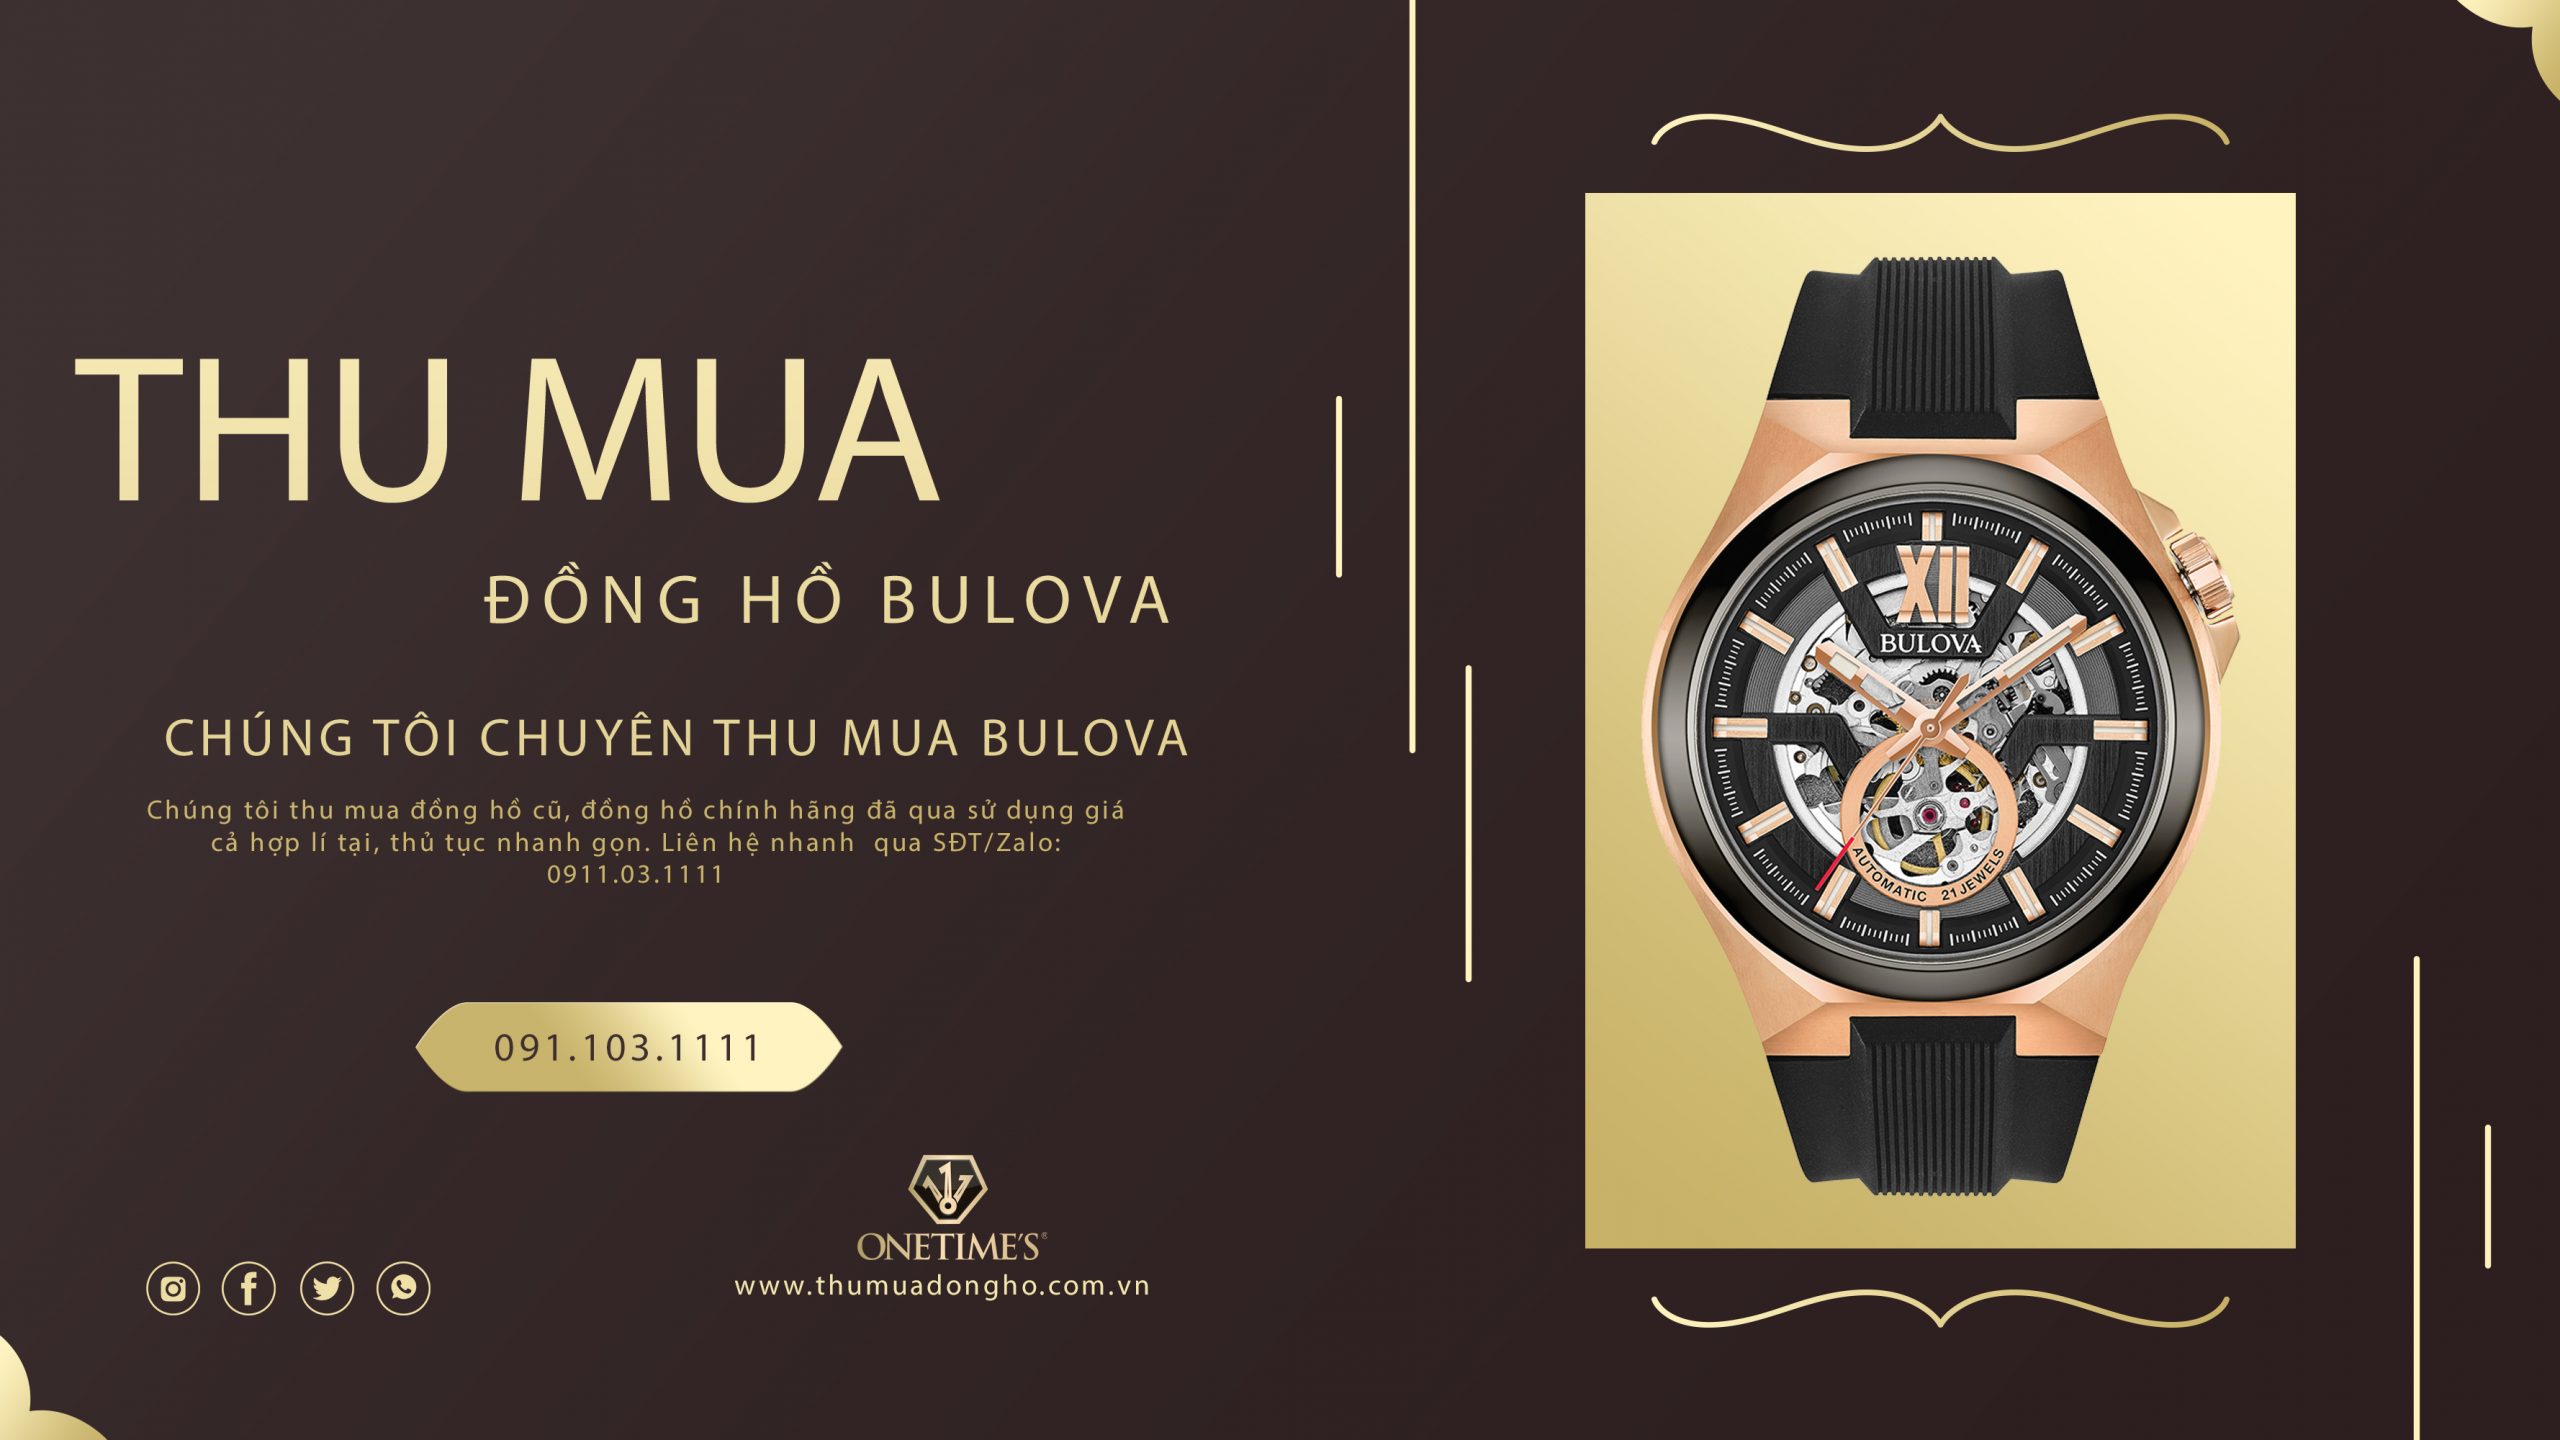 Mua bán đồng hồ Bulova cũ giá bao nhiêu? Ở đâu uy tín?